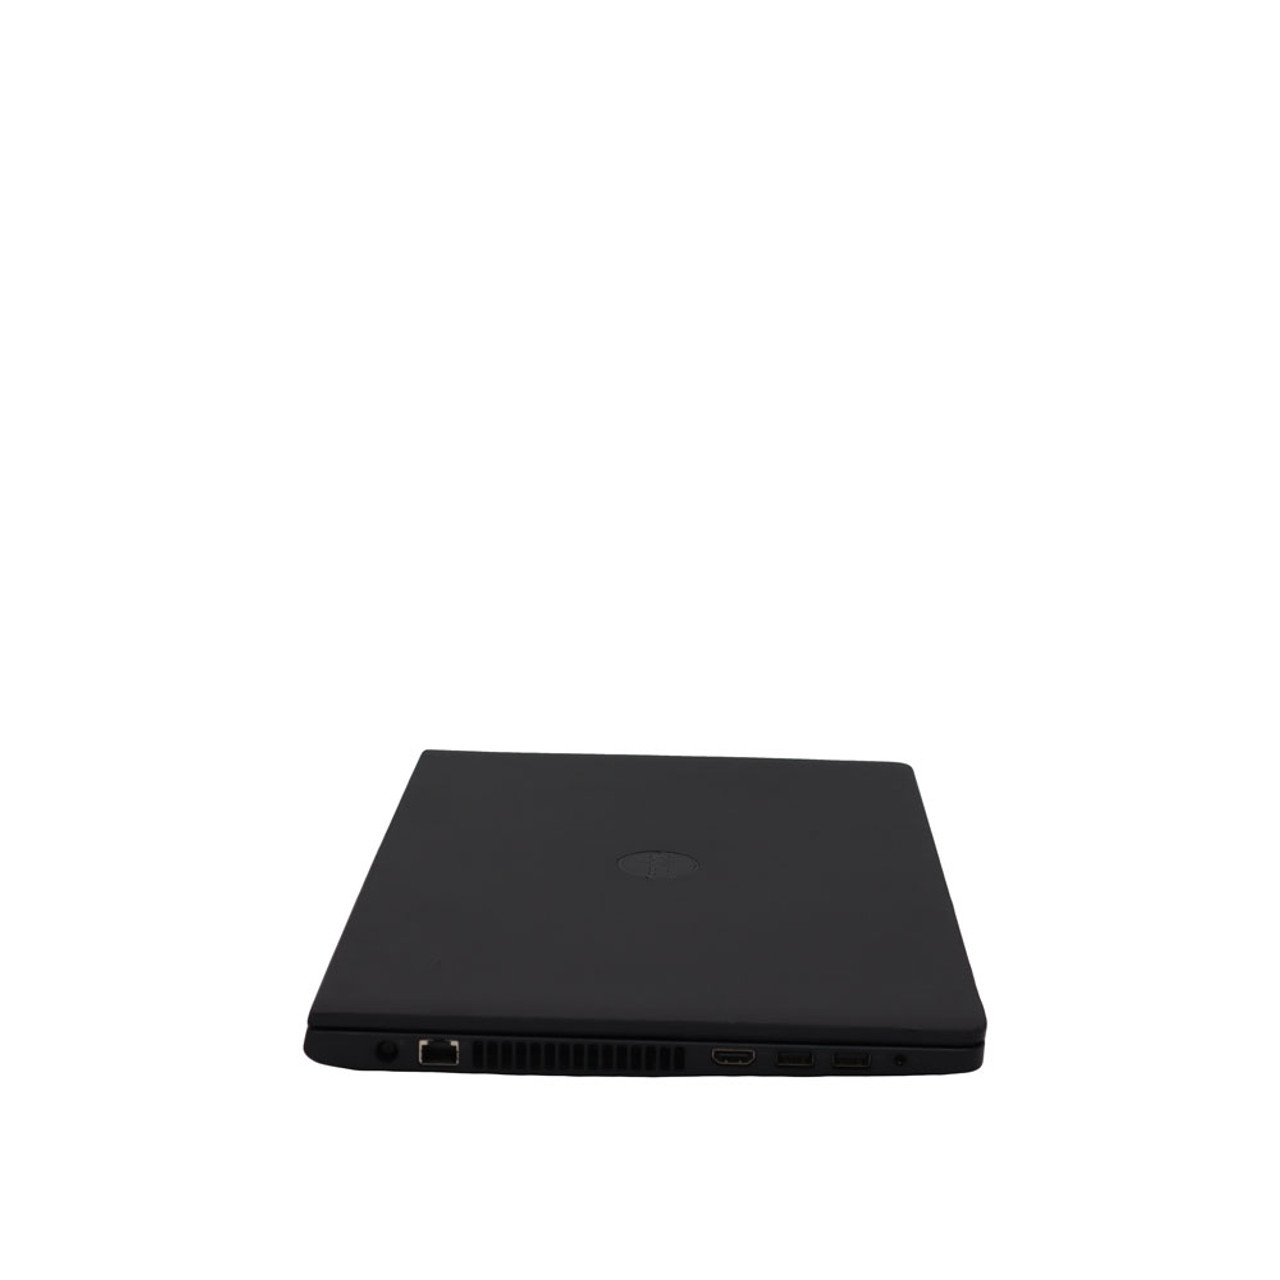 PC Portable DELL Inspiron 3542 Dual-Core 4Go 500Go